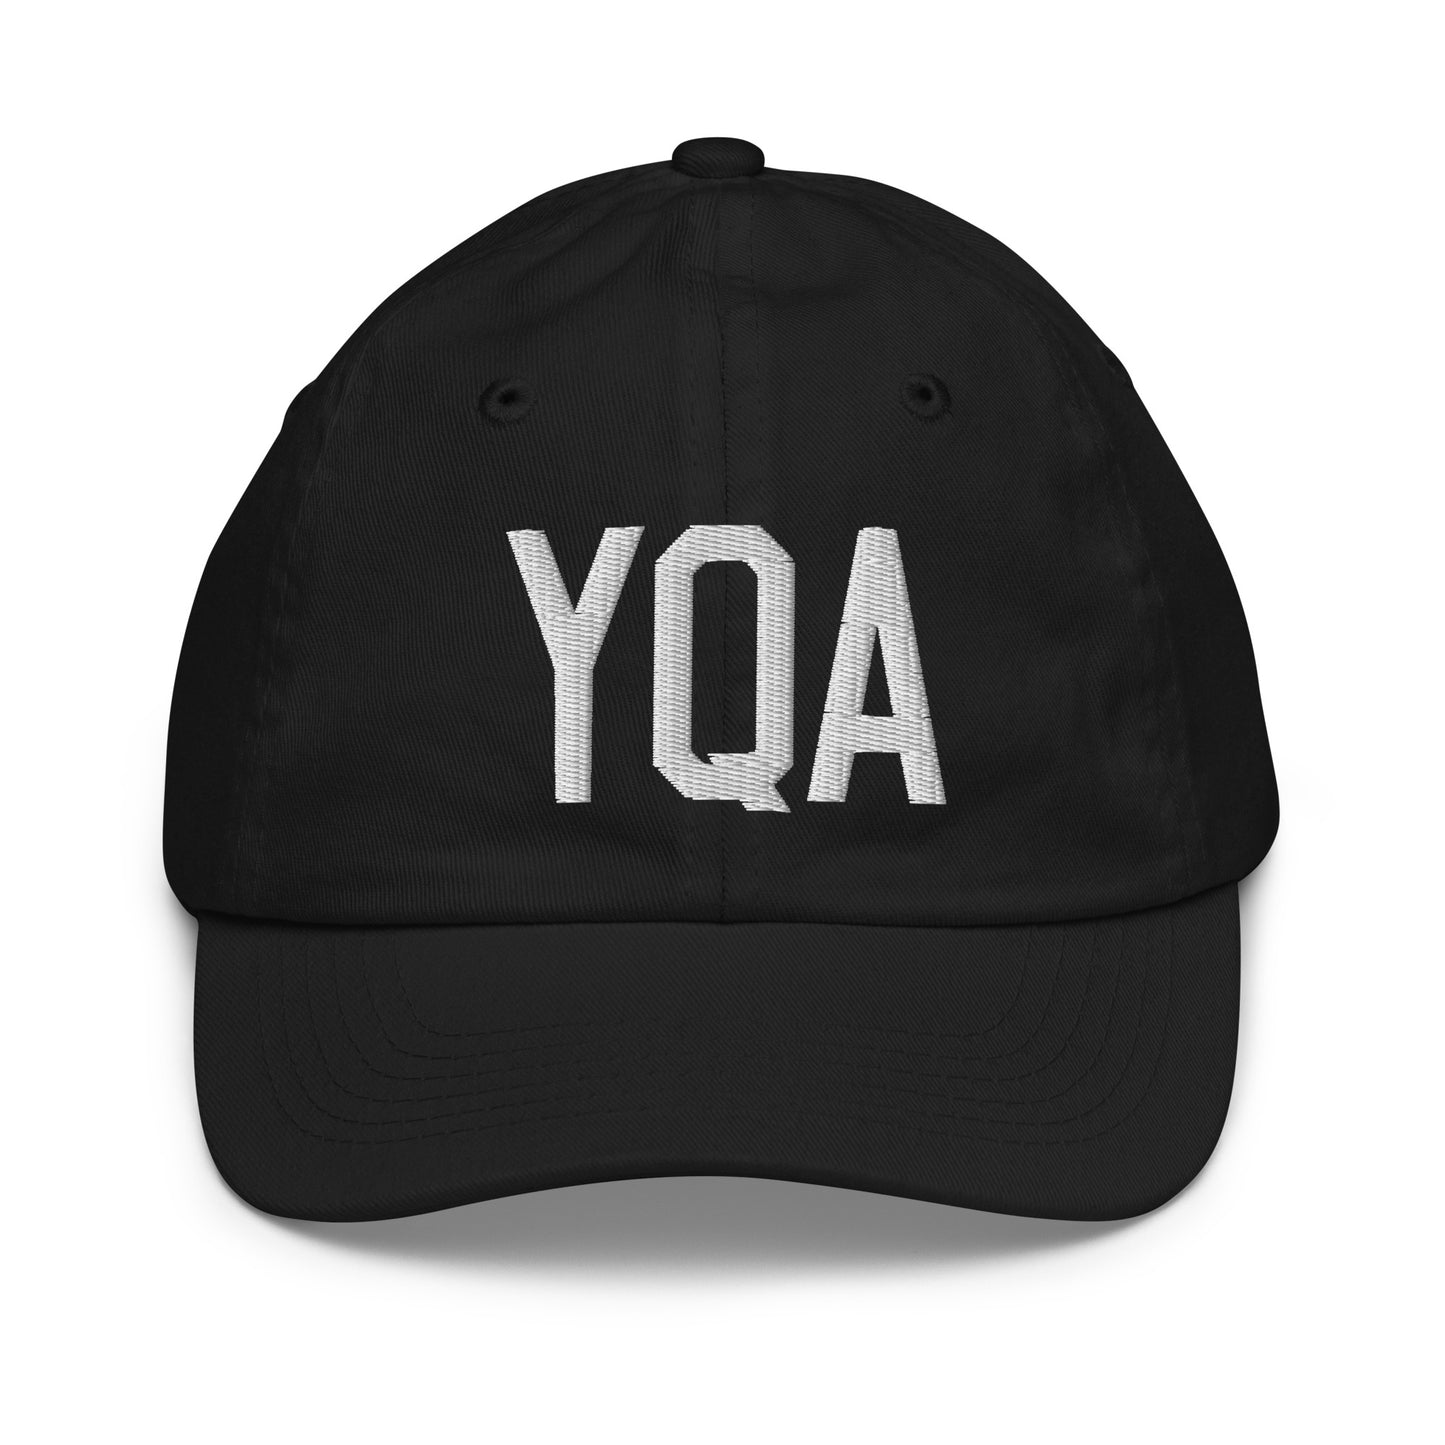 Airport Code Kid's Baseball Cap - White • YQA Muskoka • YHM Designs - Image 11